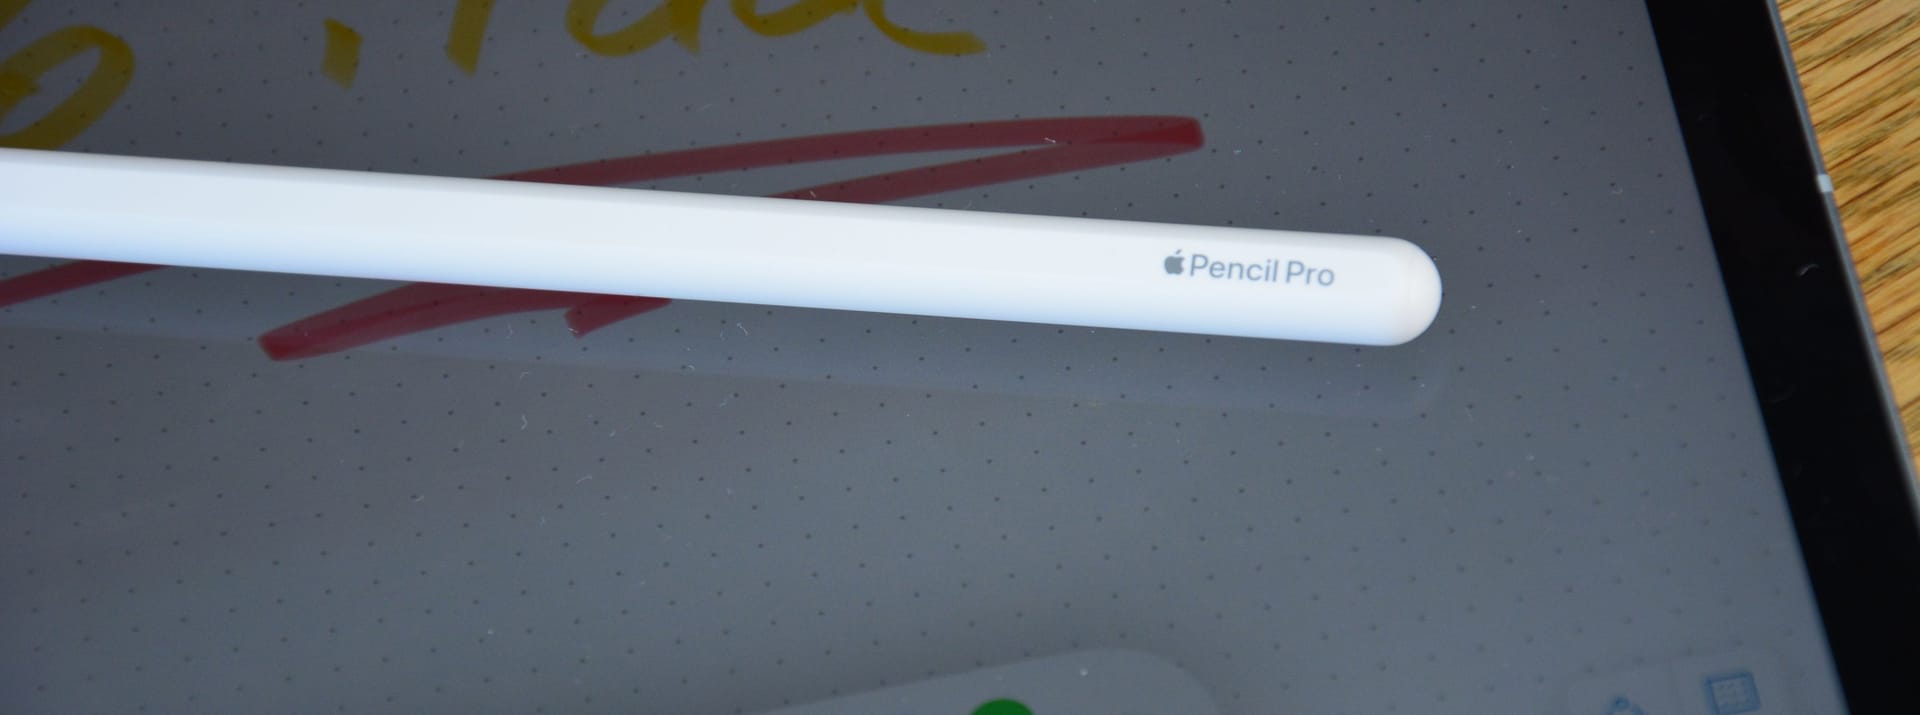 Der Apple Pencil Pro erkennt durch neue Sensoren jetzt seine Position genauer. Drückt man ihn zusammen, öffnet sich auf dem Display ein neues Menü.